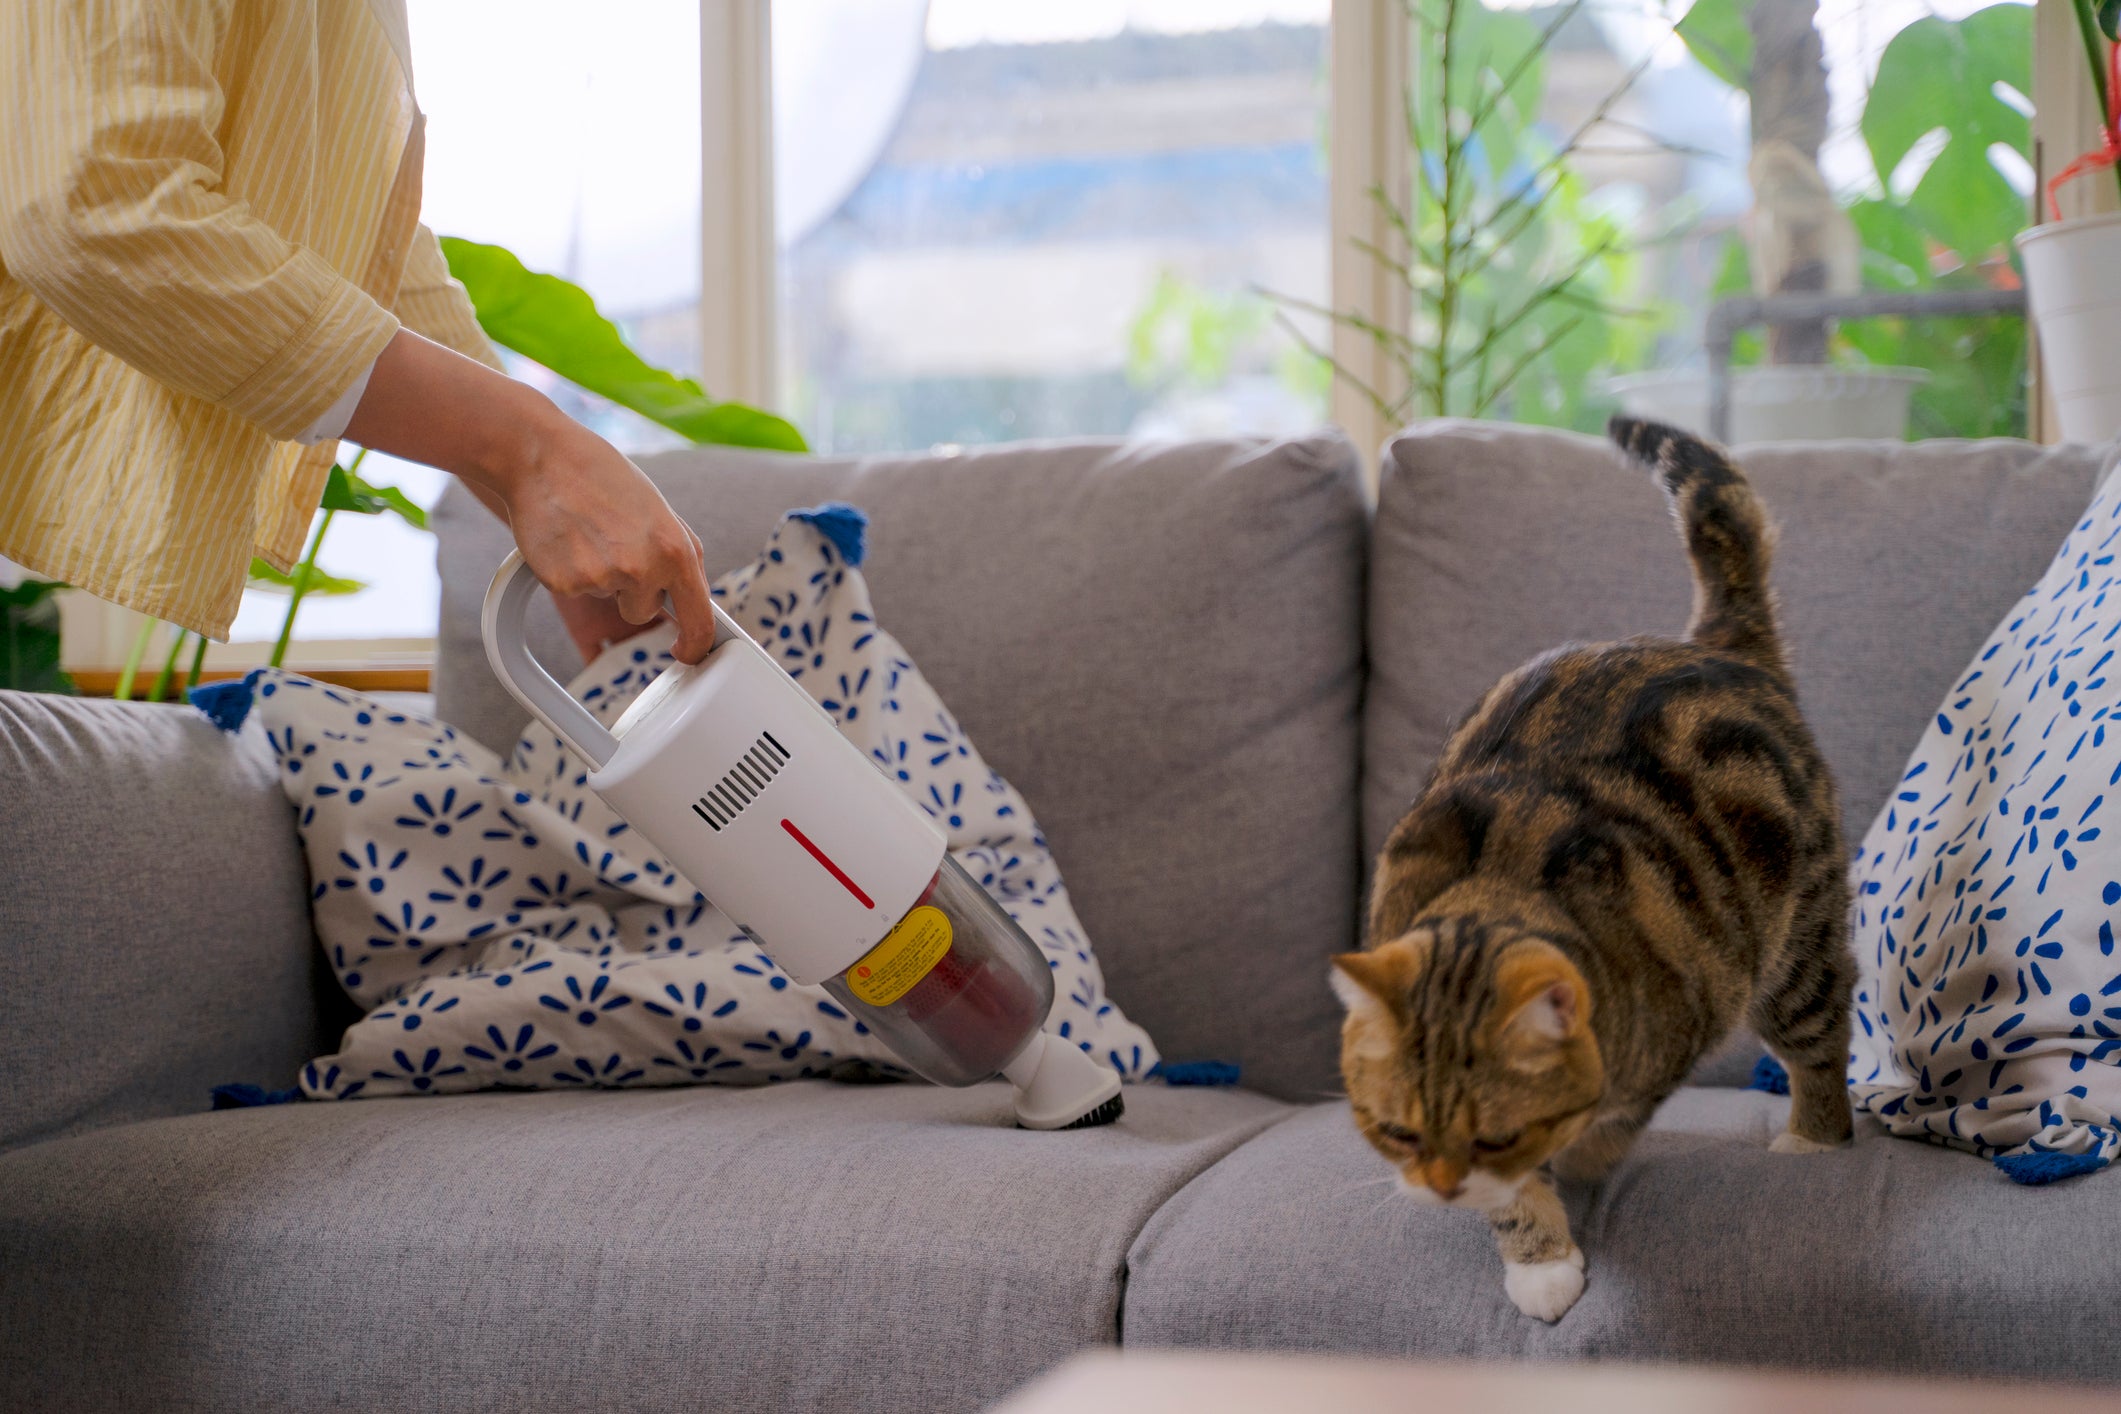 Tutora limpando pelo de gato em sofá enquanto gato foge